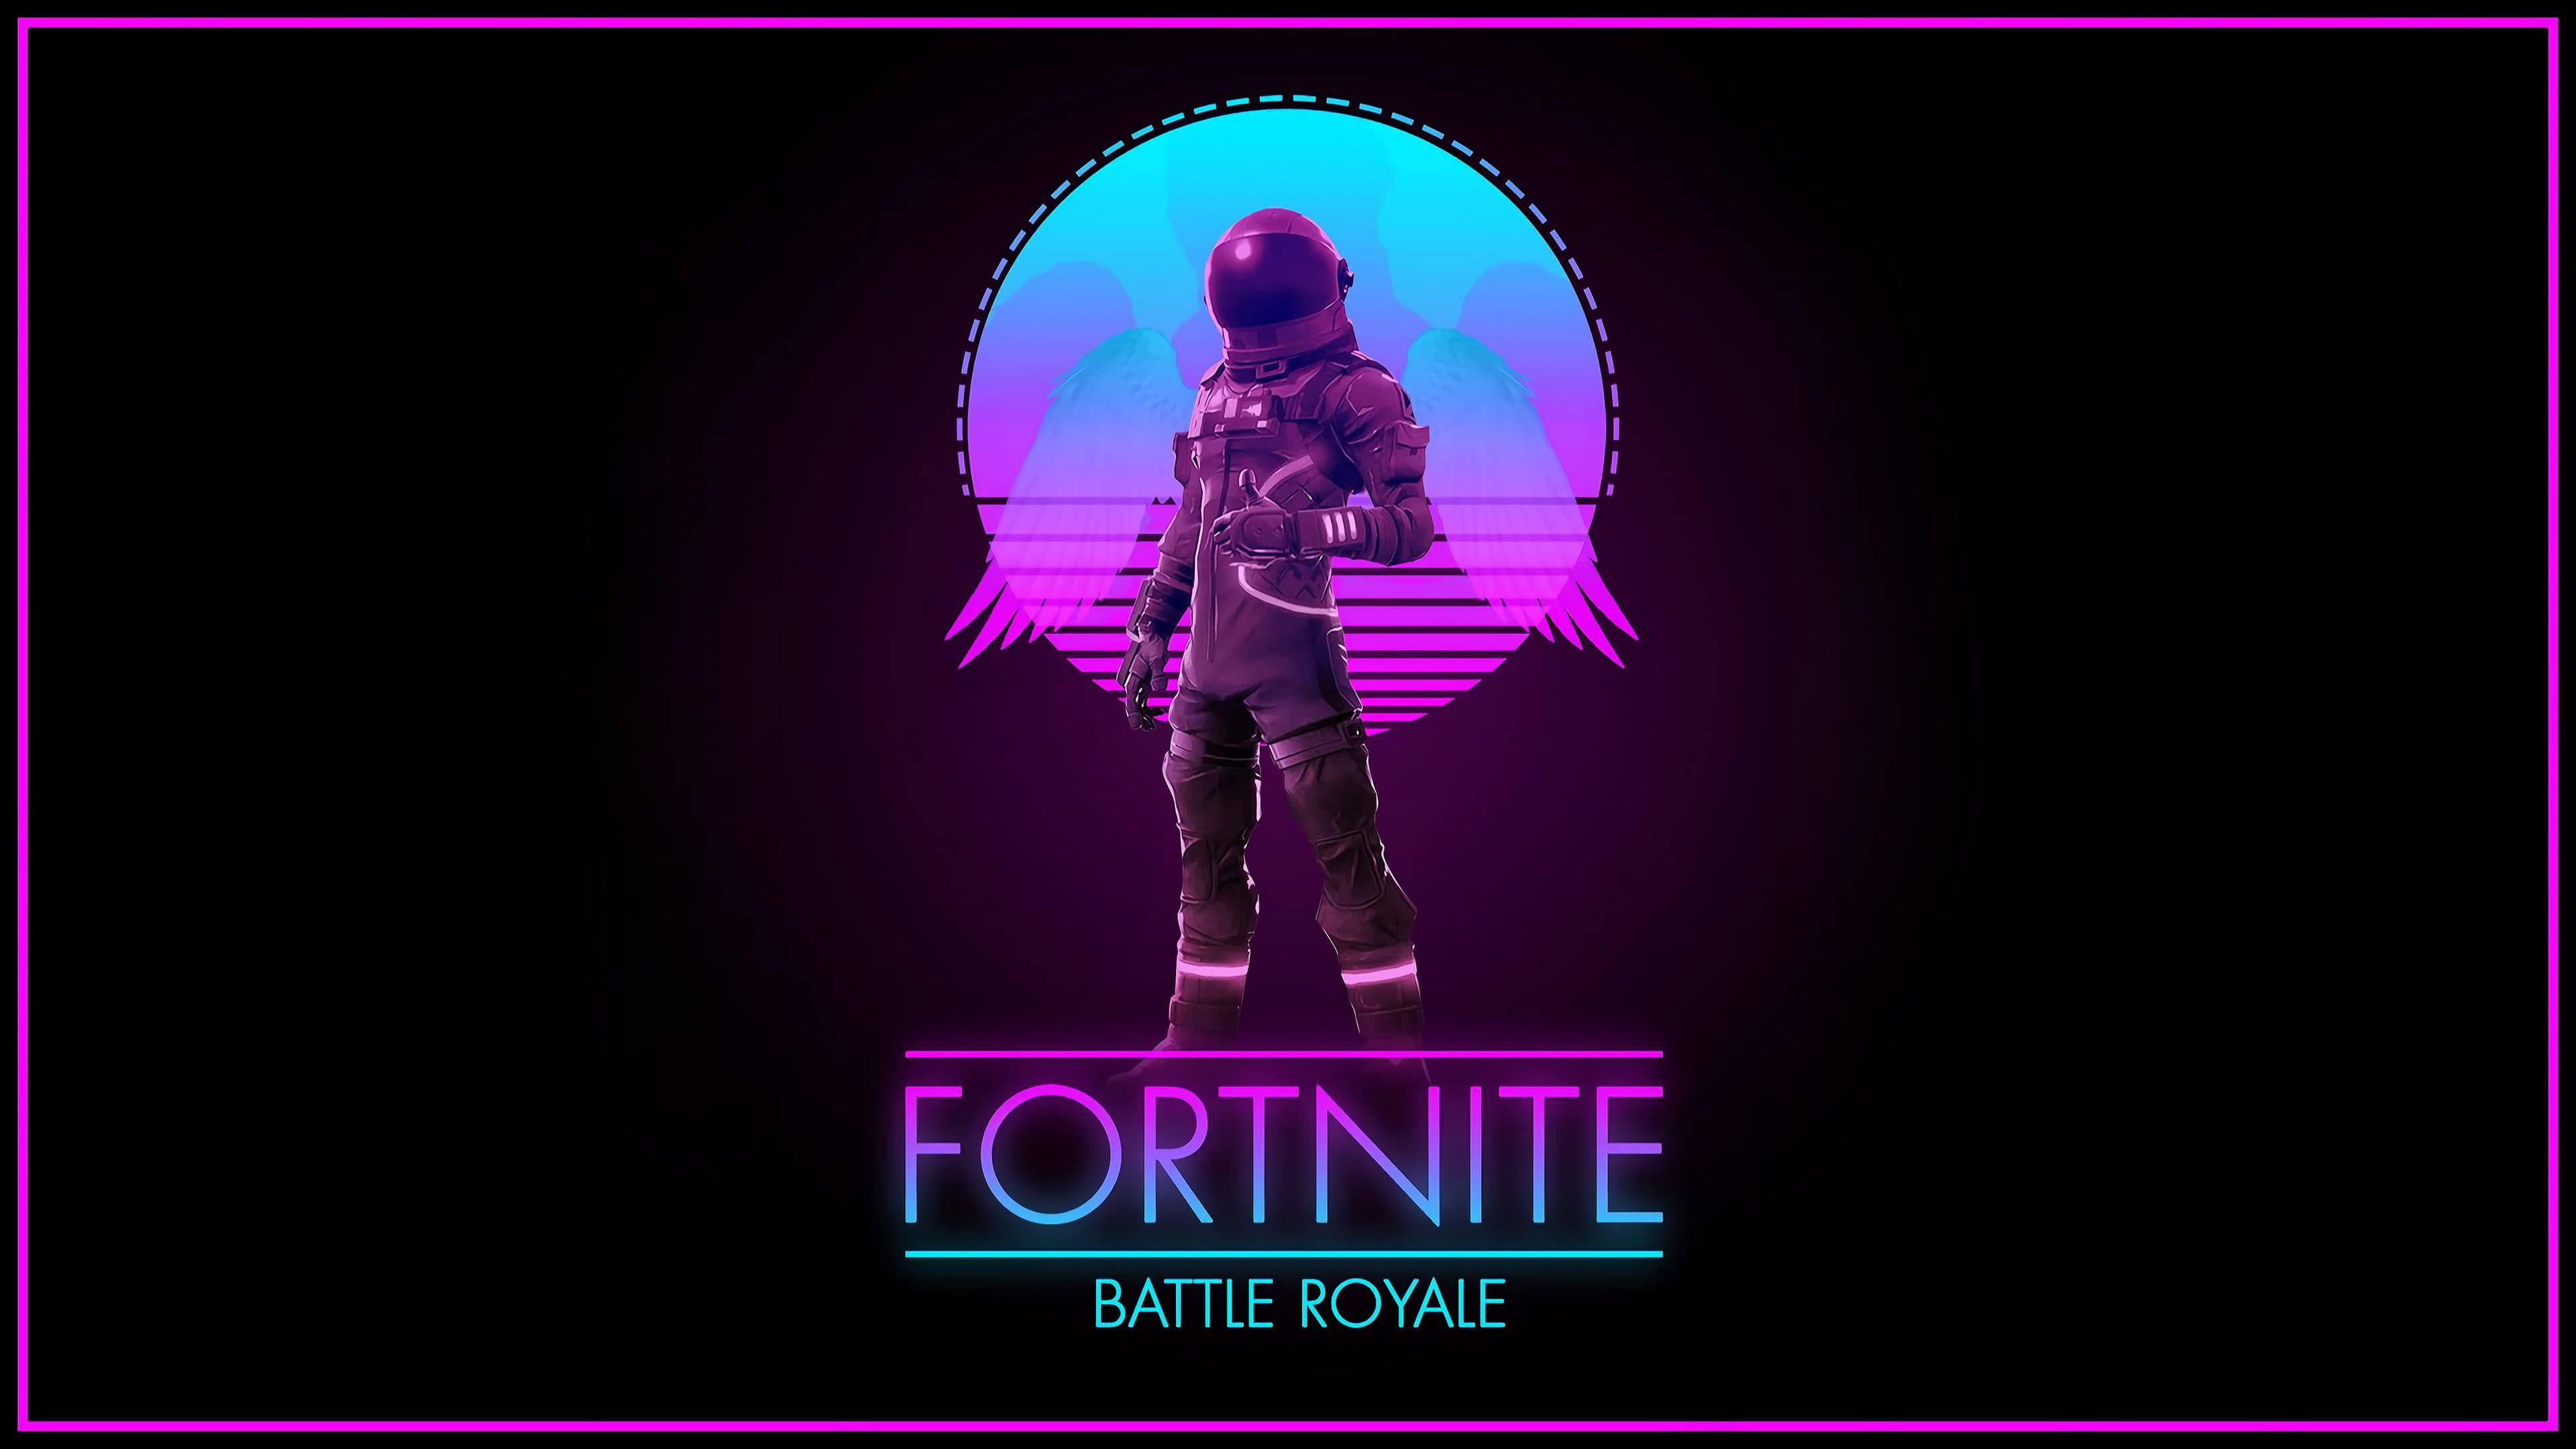 Fortnite Battle Royale Logo - Fortnite Battle Royale Logo UHD 4K Wallpaper